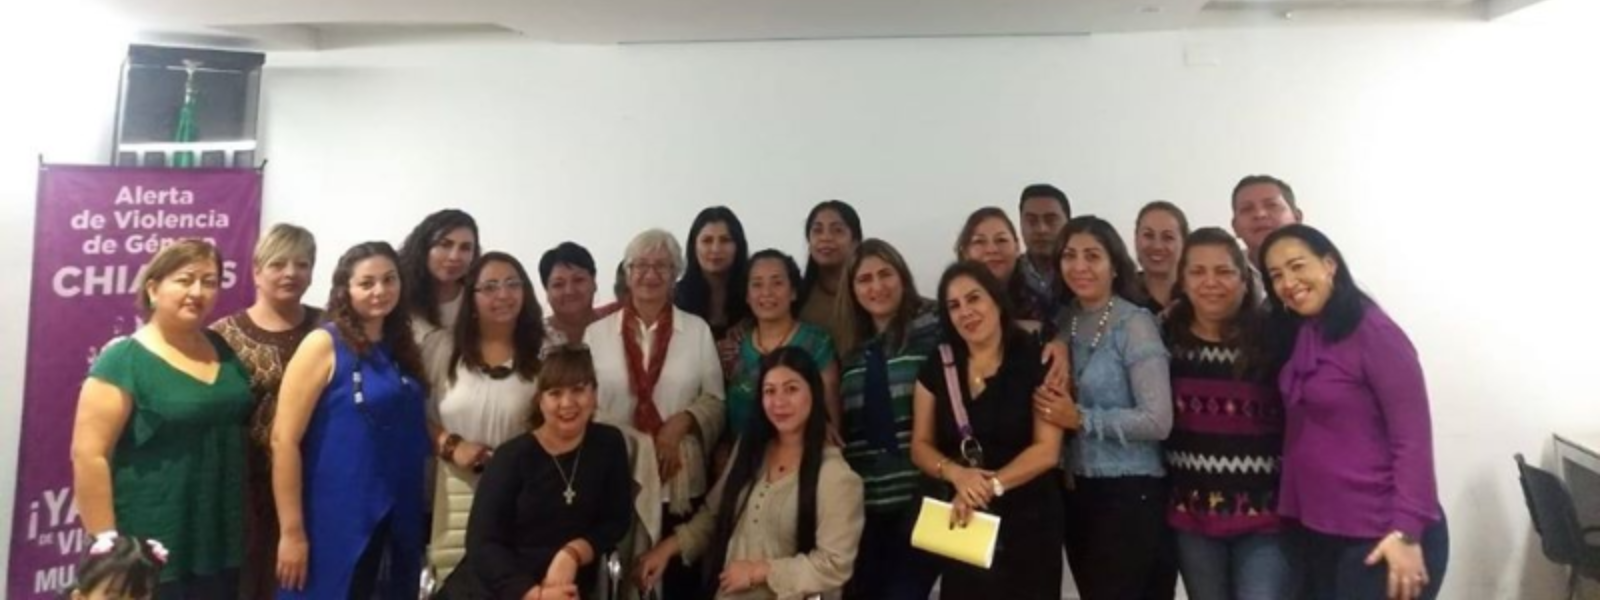 Capacitación "Alerta de Violencia de Género contra las Mujeres en Chiapas".  11/02/2020